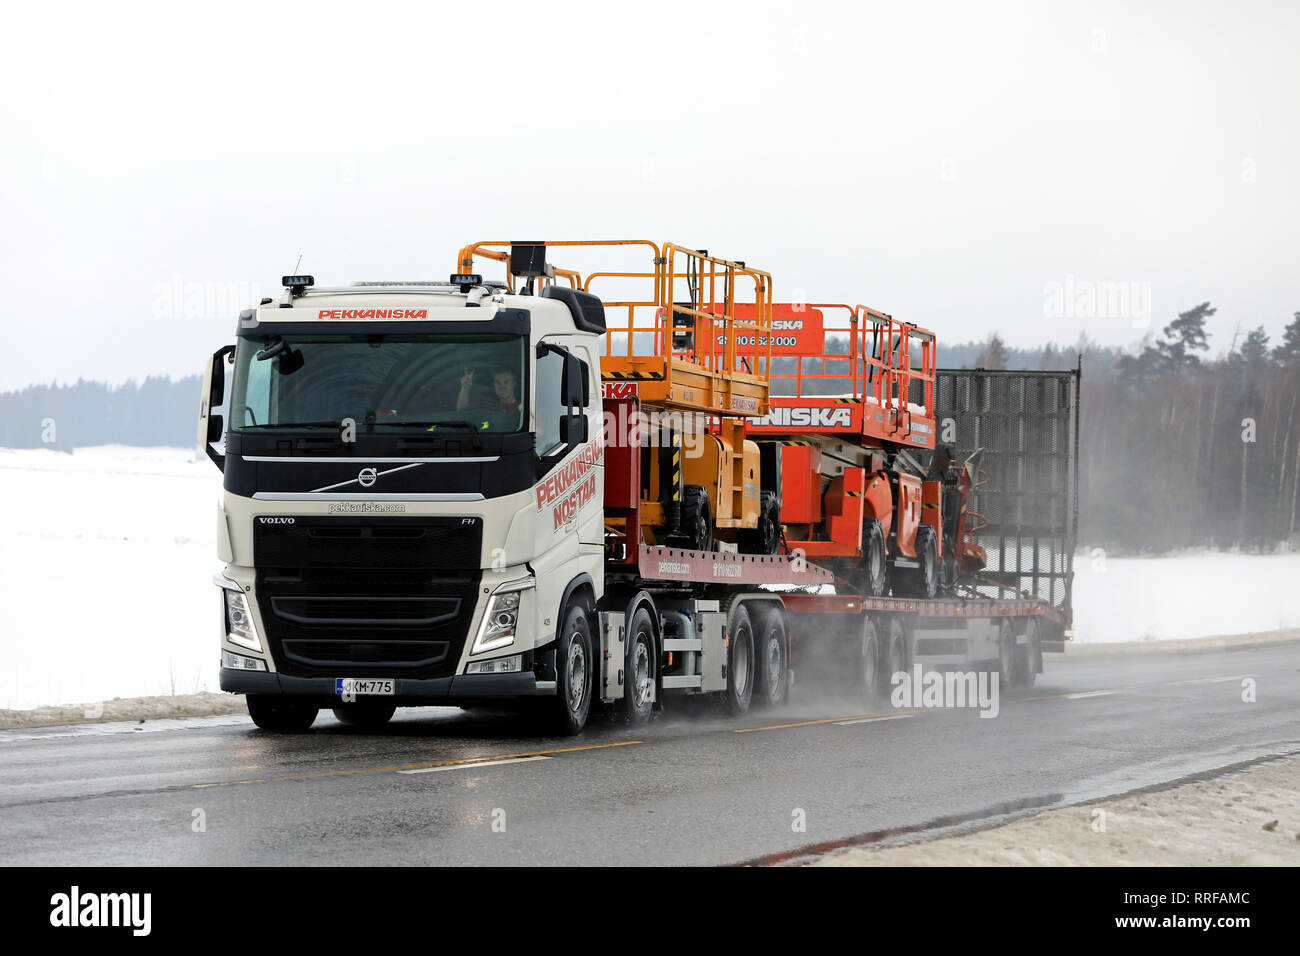 Salo, Finlande - le 8 février 2019 : Volvo FH semi-remorque transporte un équipement de levage de Pekkaniska, une société finlandaise location Grues et plate-formes. Banque D'Images